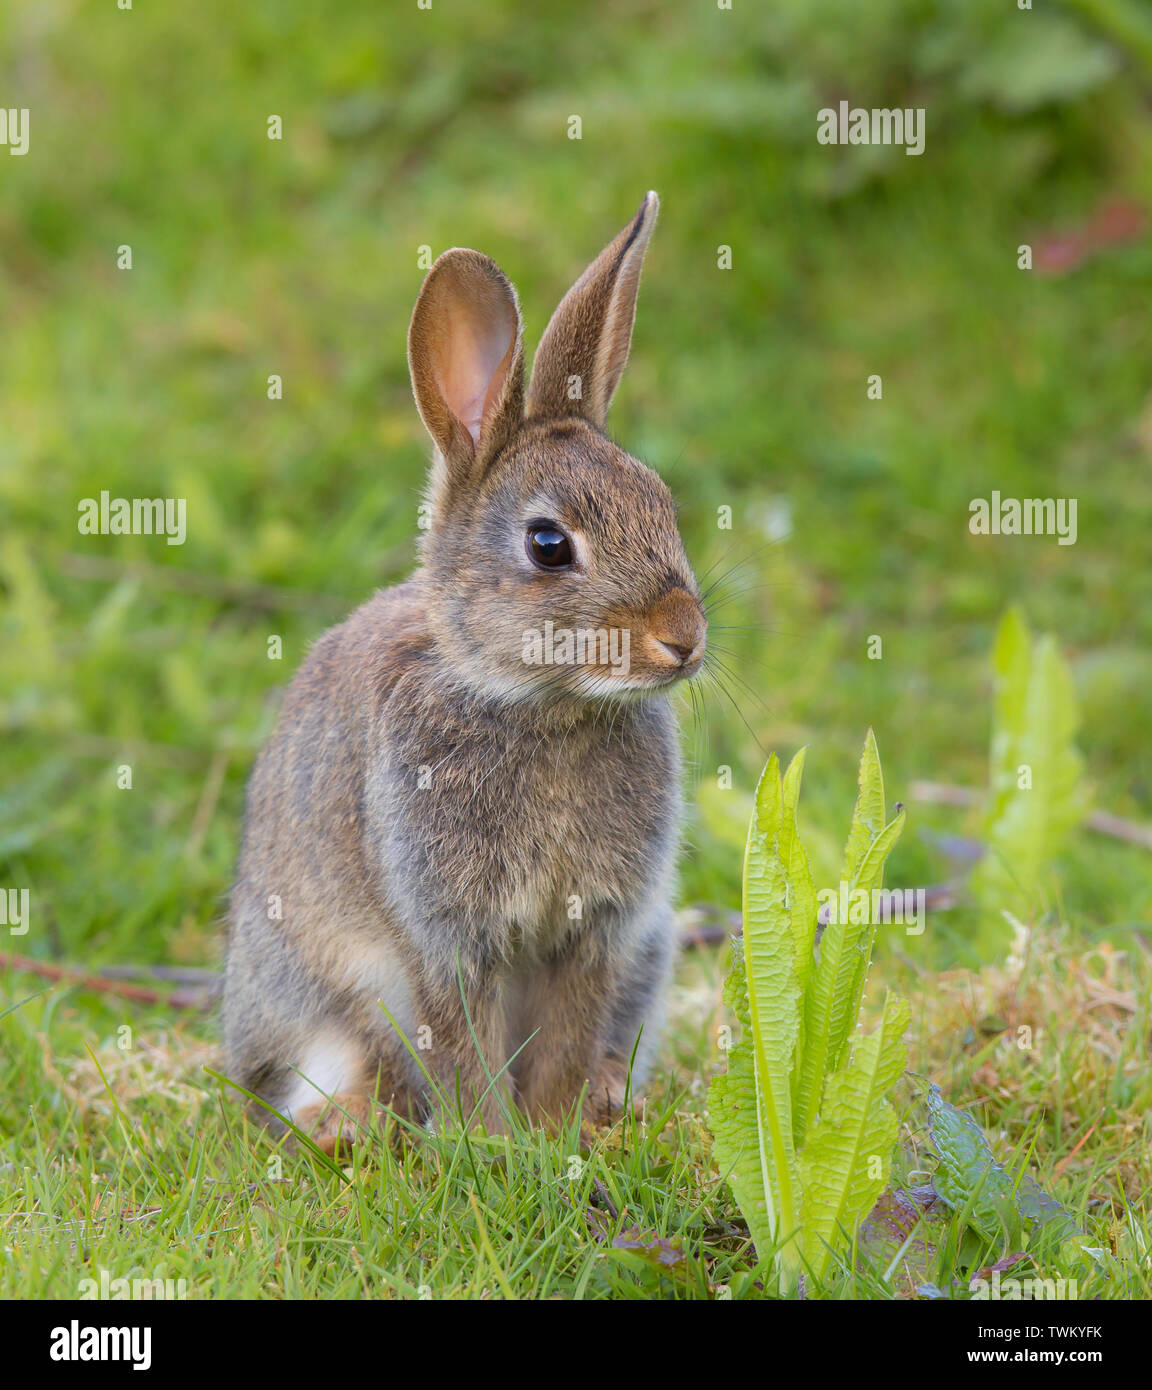 Primer plano frontal de conejo salvaje del Reino Unido (Oryctolagus cuniculus) aislado, sentado alerta erguida sobre césped al aire libre en el campo. Lindo bebé animal, orejas de conejito. Foto de stock